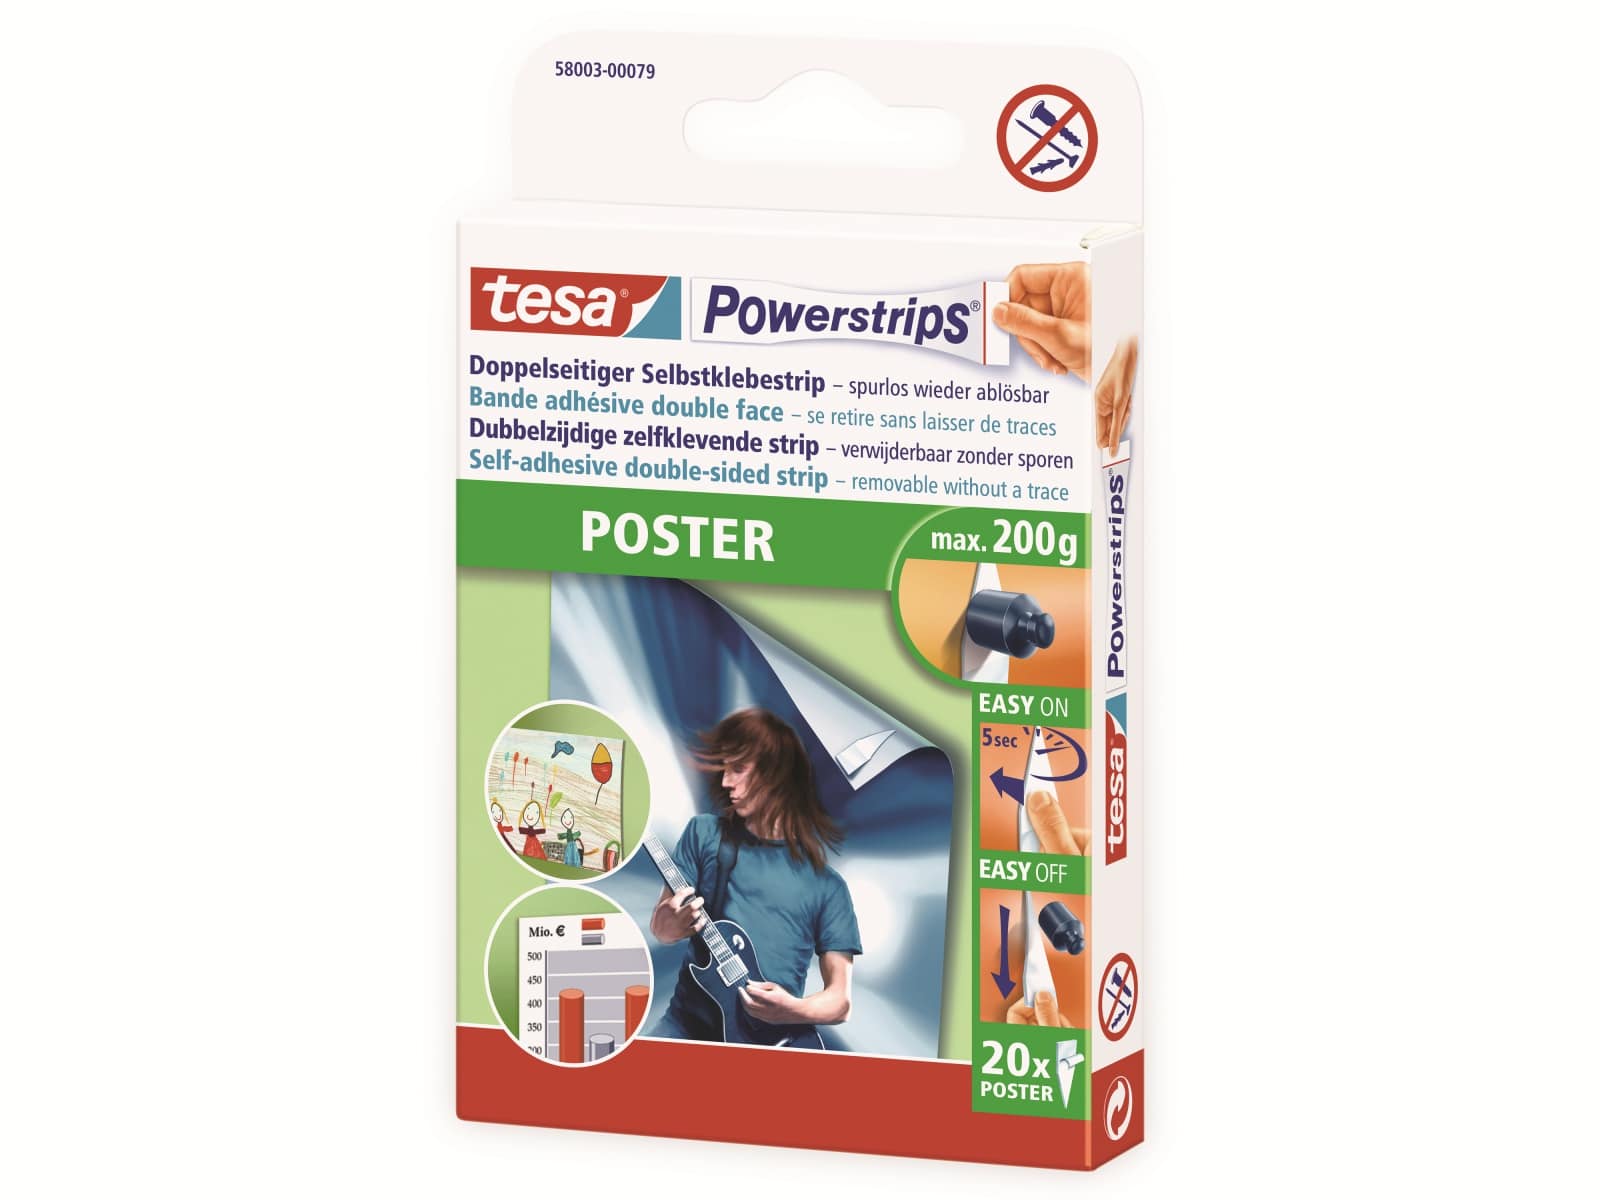 TESA Powerstrips® Poster, 58003-00079-21